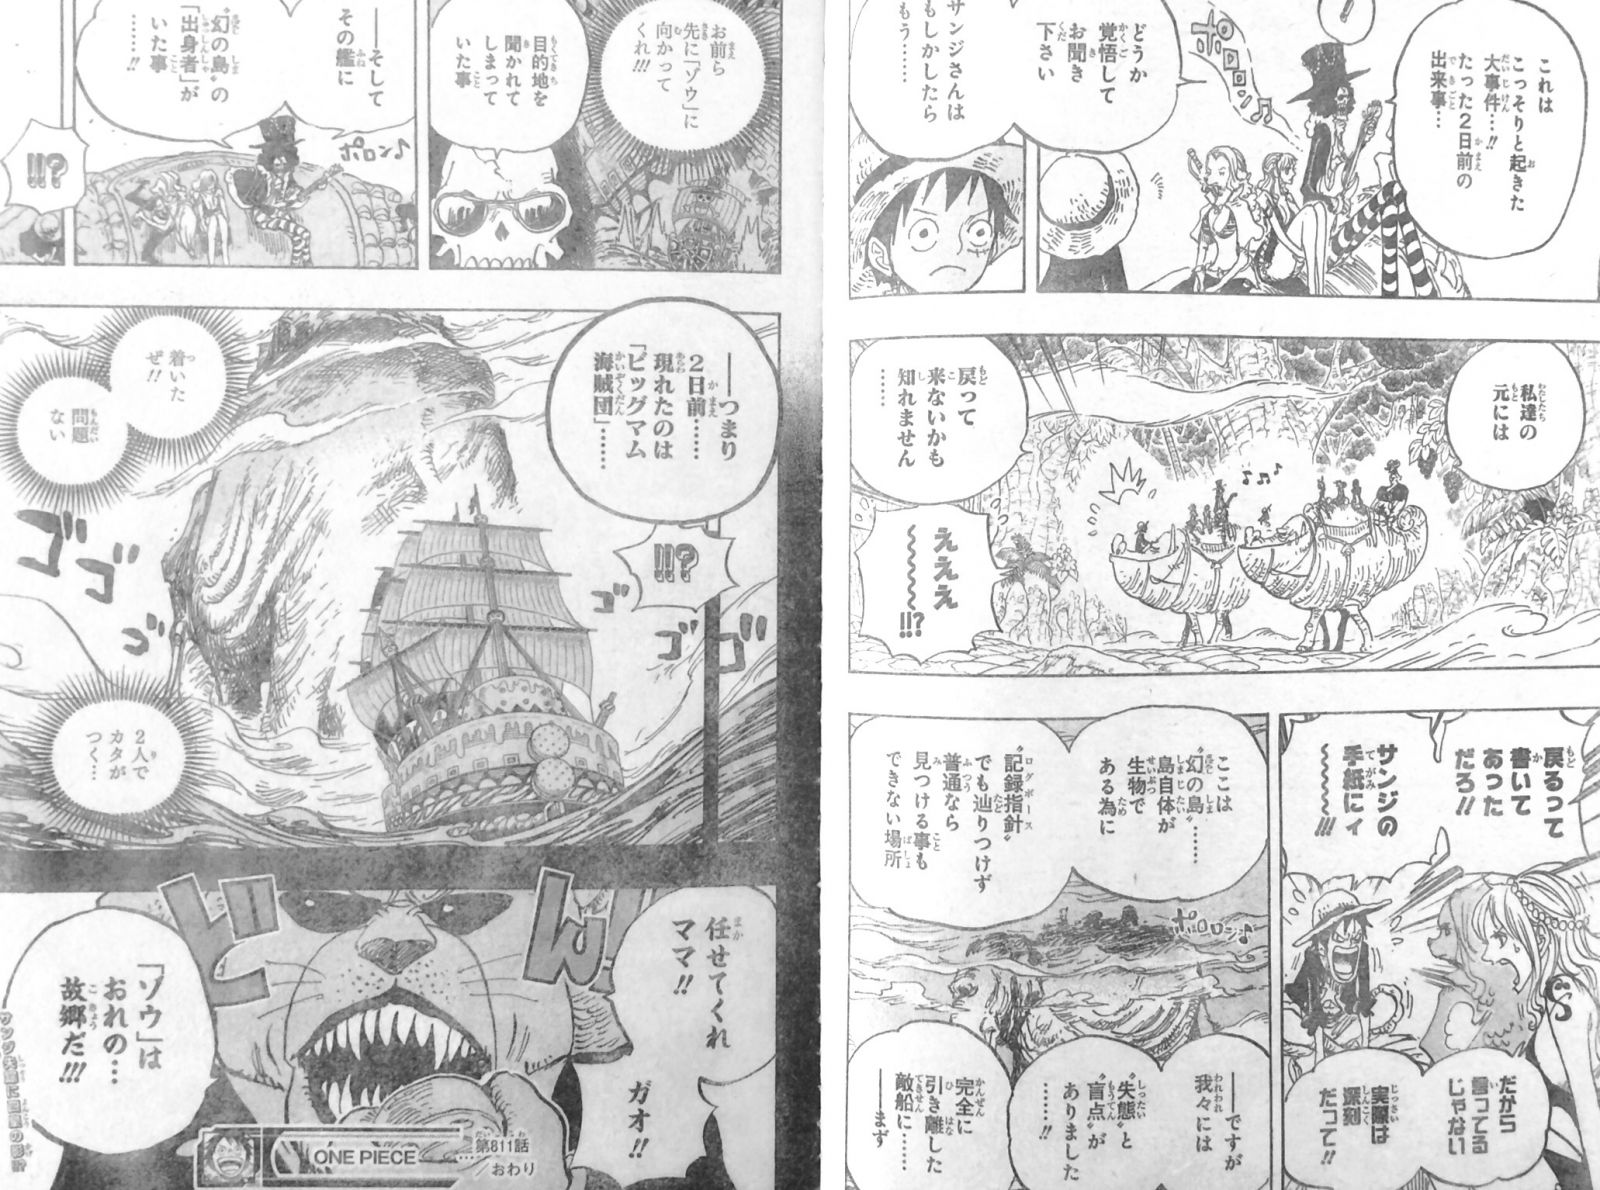 第811話 Roko サンジもう戻らない ２日前四皇ビッグマム海賊団ゾウ出身ペコムズら現る One Piece ワンピース 道場 アニメ 漫画 まにあ道 趣味と遊びを極めるサイト